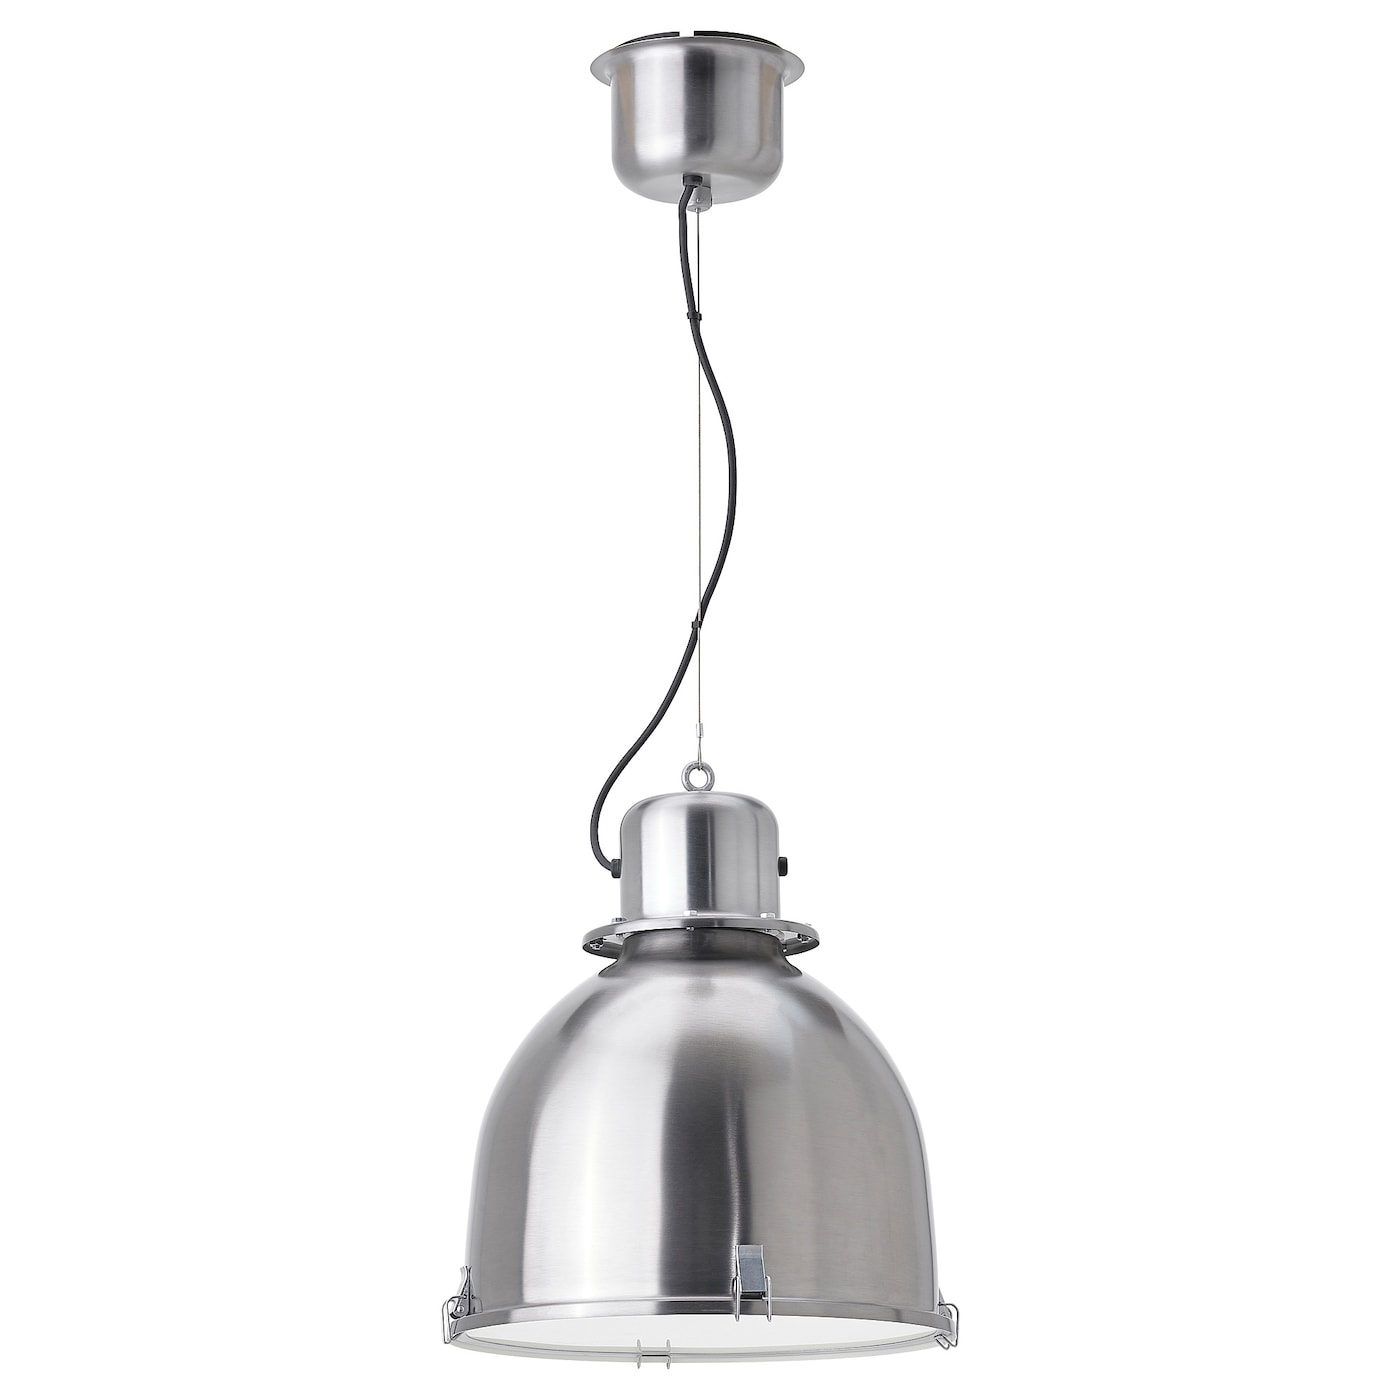 Подвесной светильник - SVARTNORA  IKEA / СУННЕБЮ / СВАРТИНОРА ИКЕА, 38 см, серебритсый